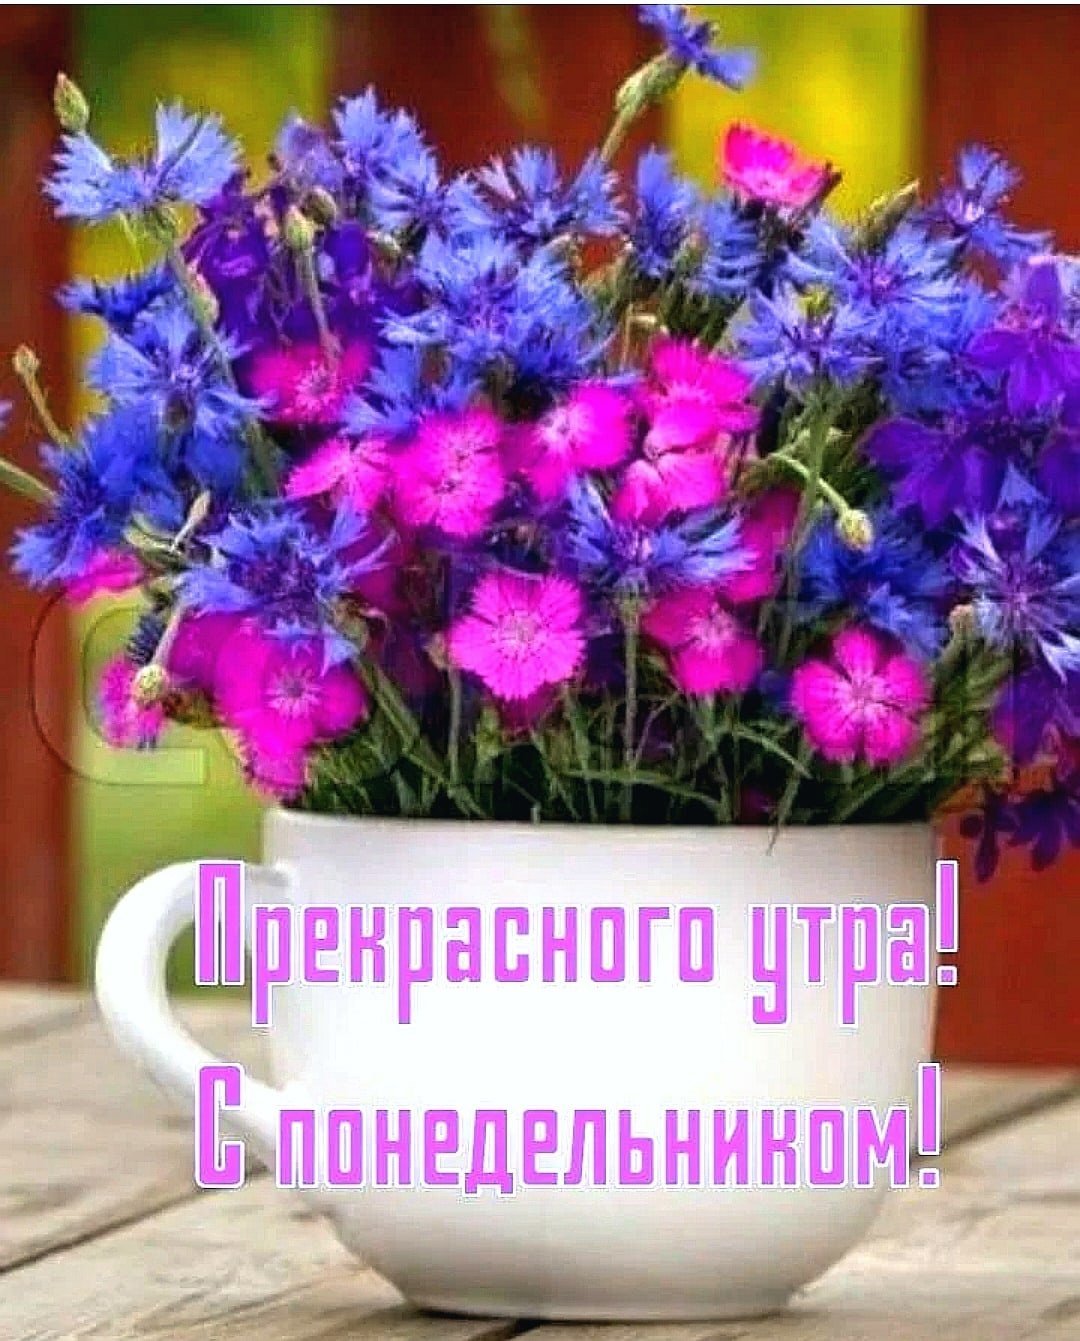 Доброе утро цветы с пожеланиями. Поздравления с добрым утром цветы. Открытки с добрым утром с цветами. Прекрасного утра и хорошего настроения. Понедельник неделя началась